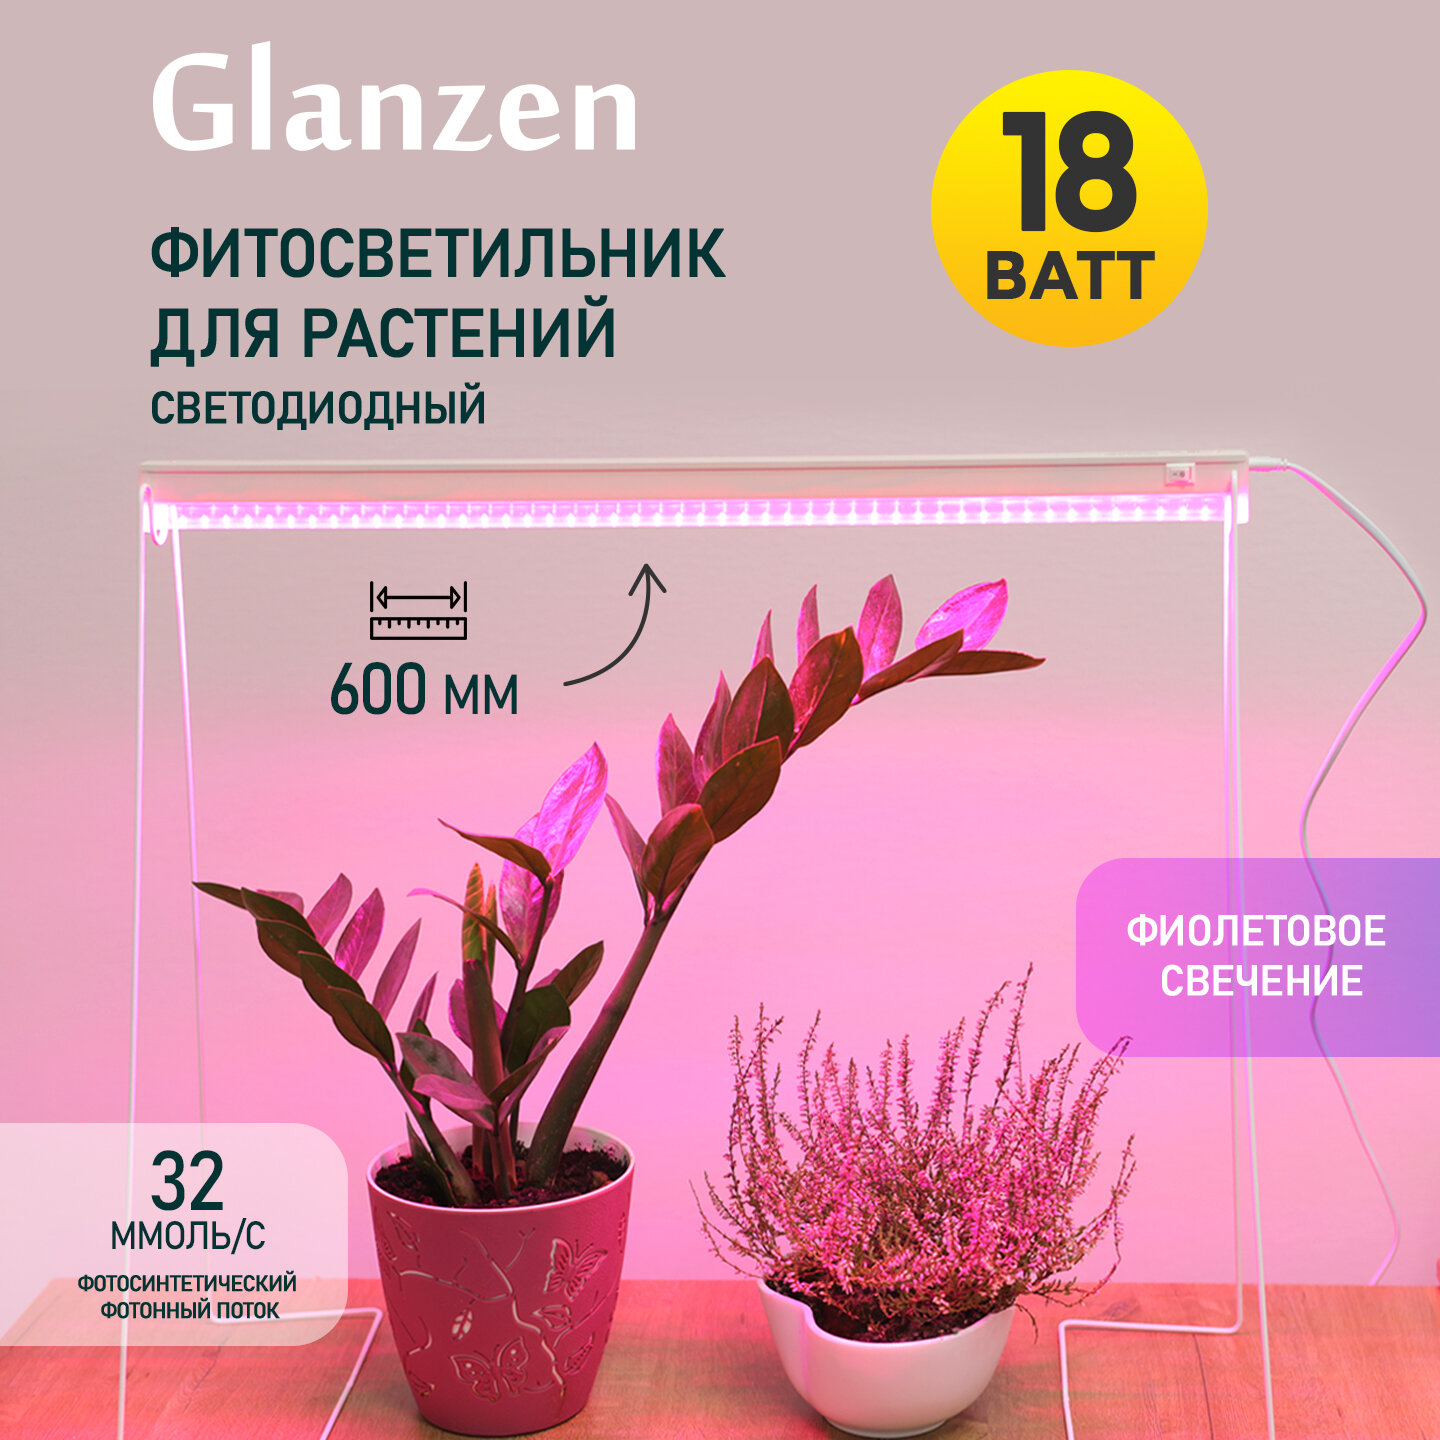 Светодиодный линейный фитосветильник / фитолампа для растений и рассады GLANZEN 18 Вт RPD-0600-18-fito 600 мм